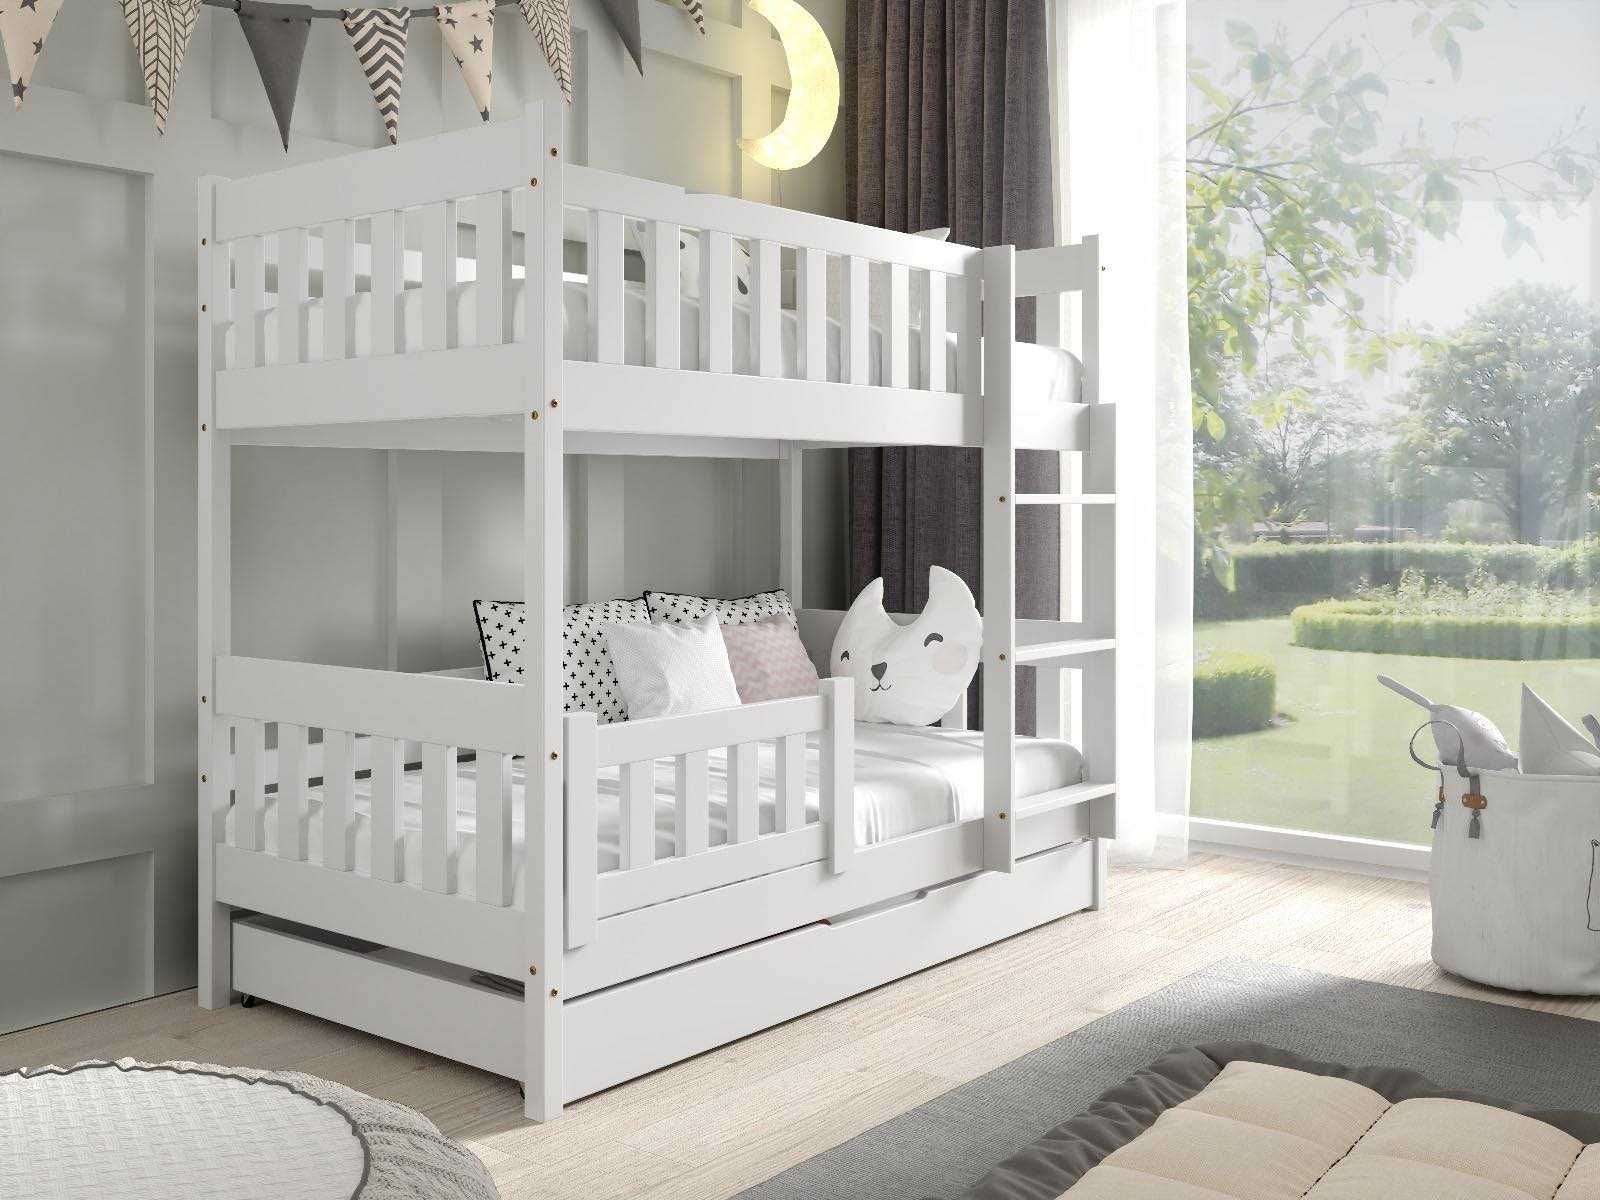 Łóżko dla 2 dzieci LILA 160x80 - materace gratis!